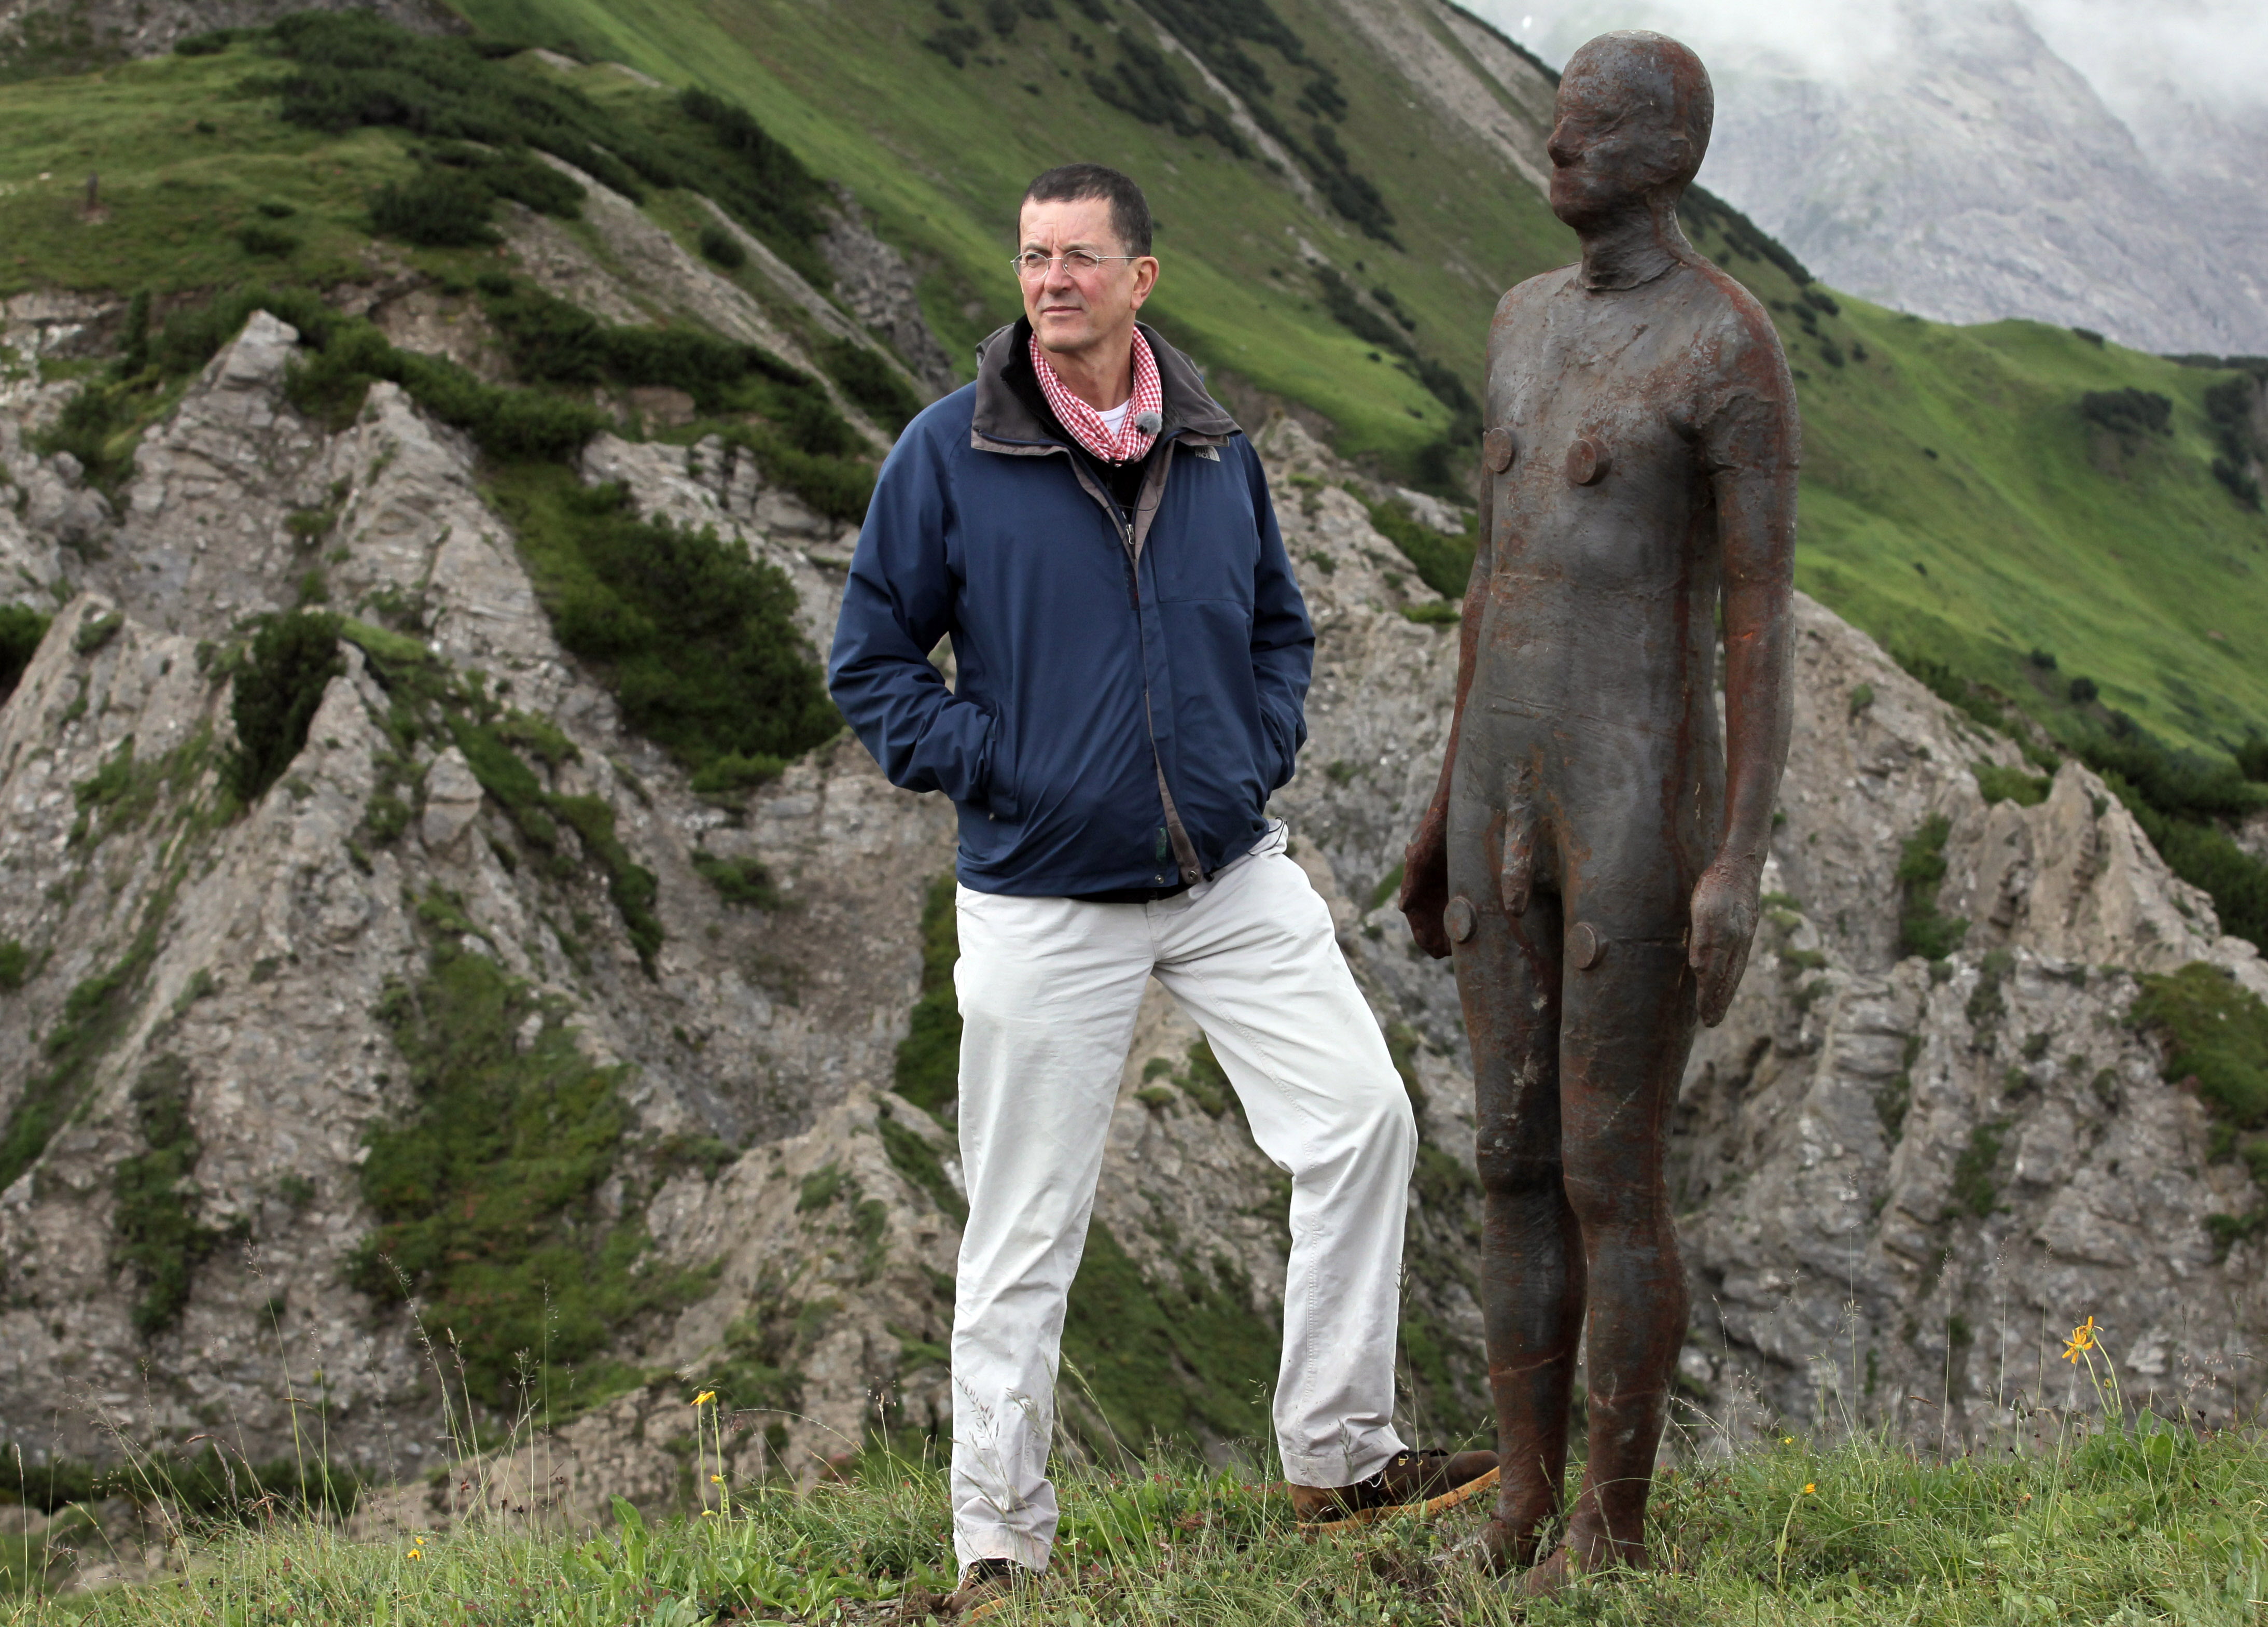 Sir Antony pose à côté d'une figure en bronze grandeur nature près de l'alpage de Kriegeralpe dans le village autrichien de Lech am Arlberg le 30 juillet 2010.